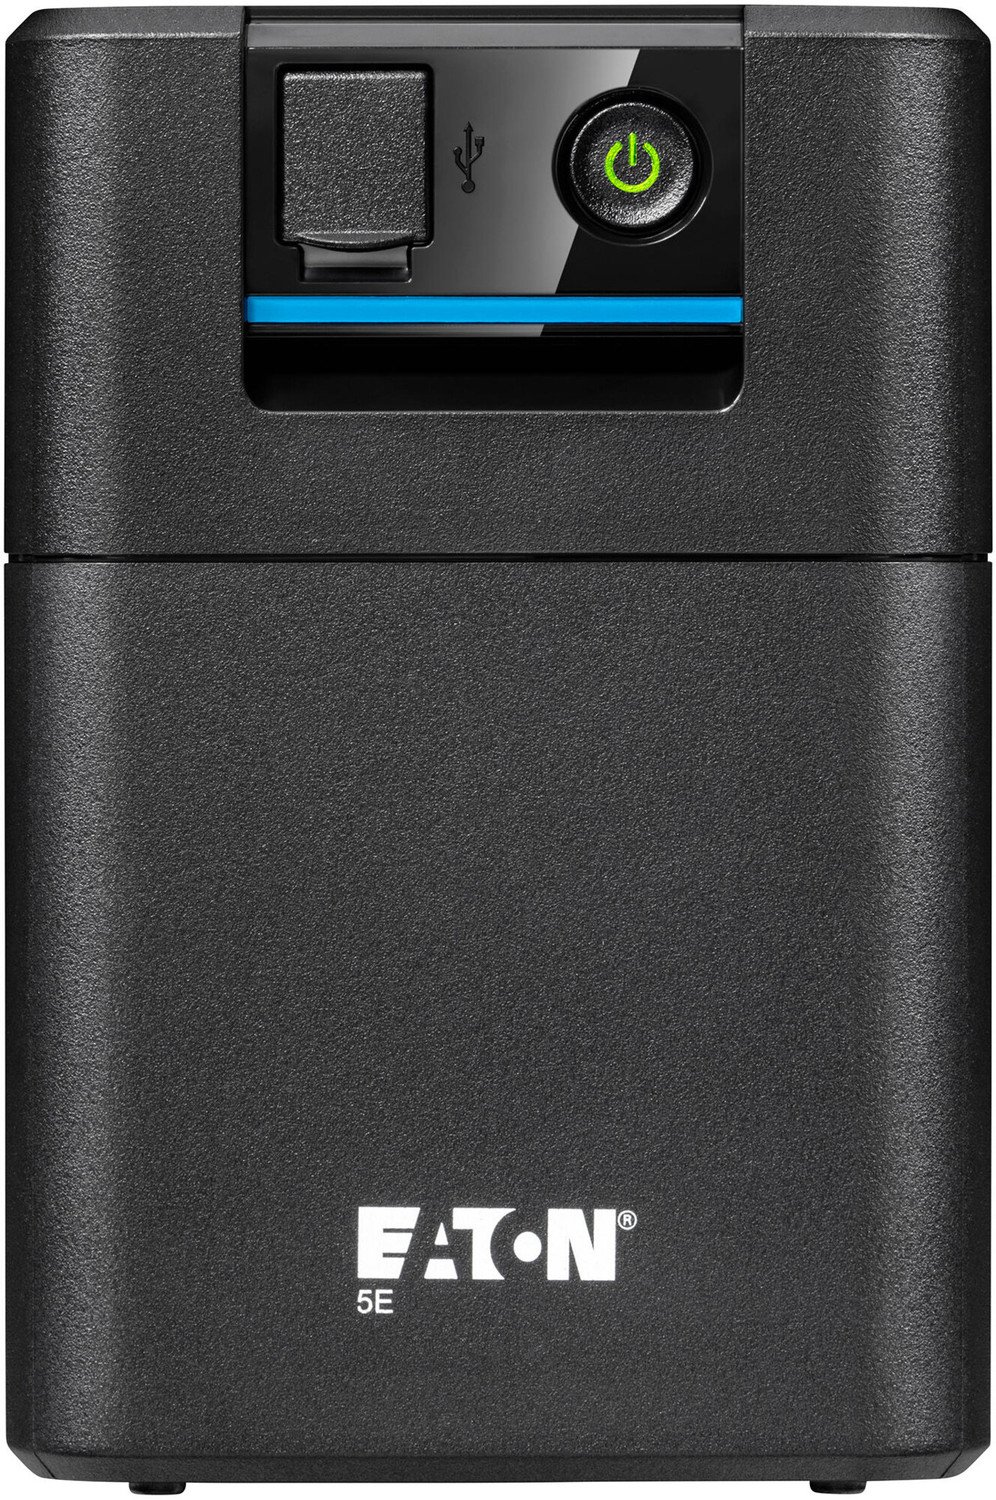 Eaton 5E 700 USB IEC G2 - 5E700UI